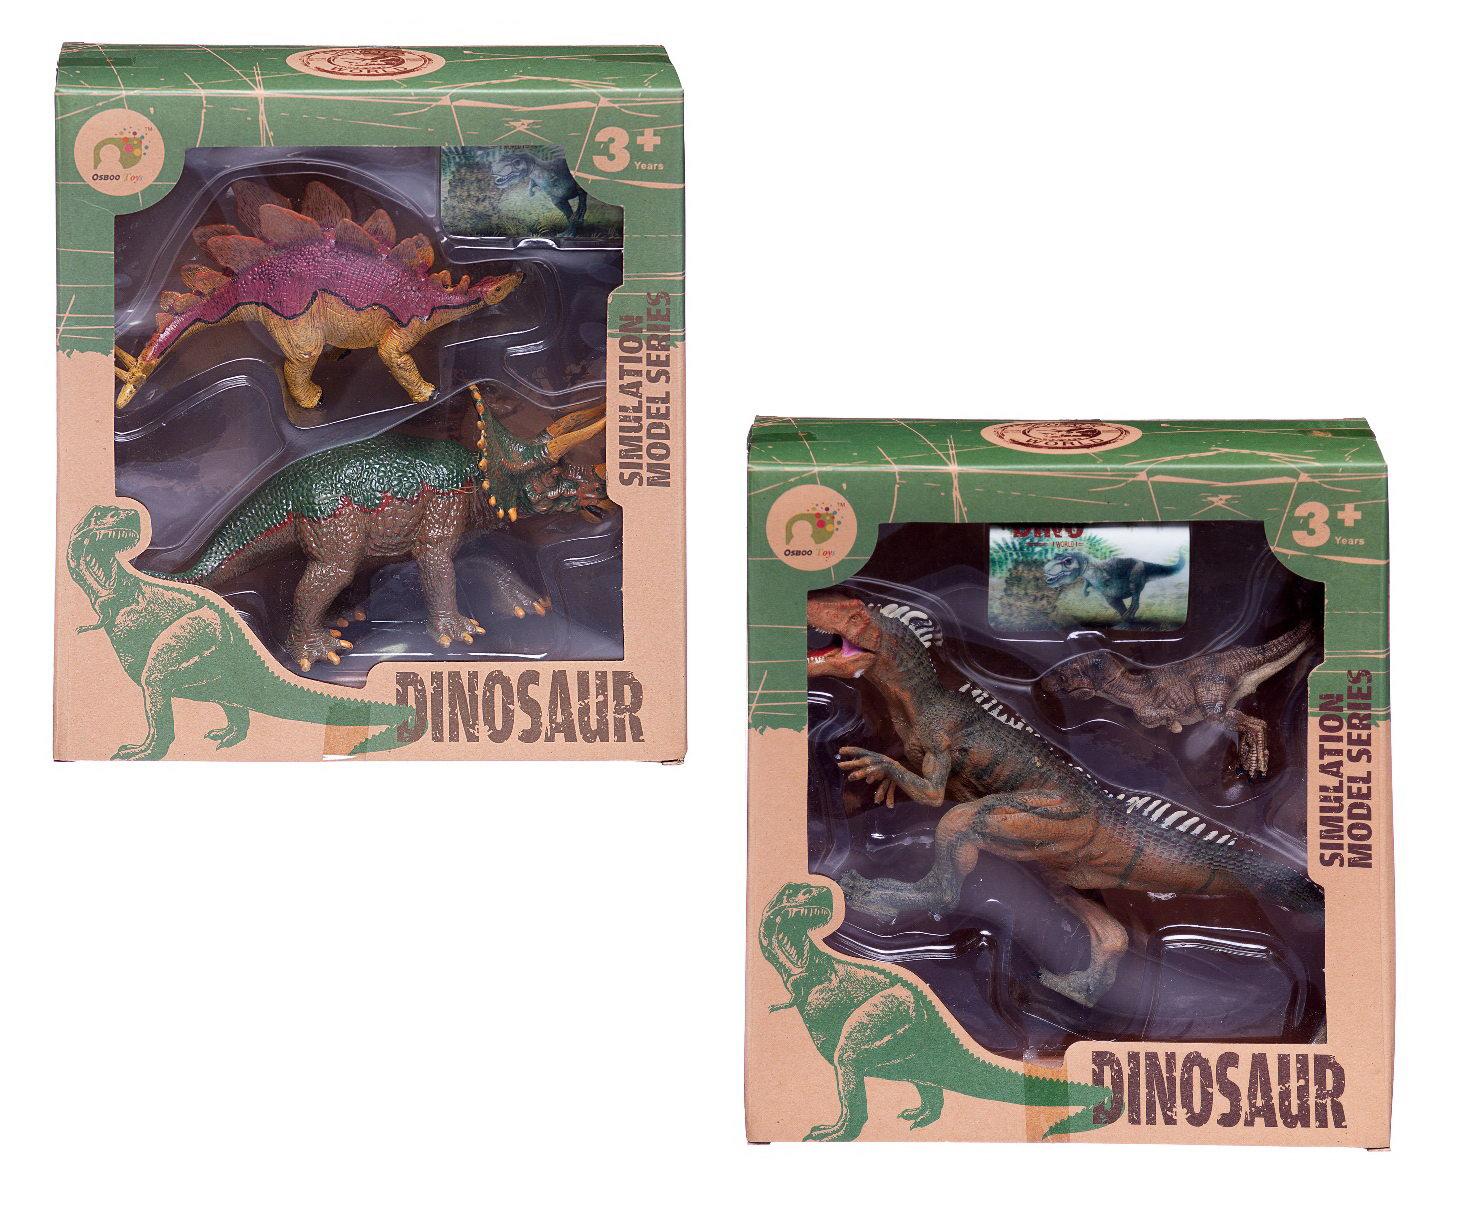 WA-14612 набор игровой Мои любимые динозавры. Игроленд набор динозавров. Ребенок любит динозавров. Набор динозавров в ассортименте Пластизол 7021. 5 серию динозавра